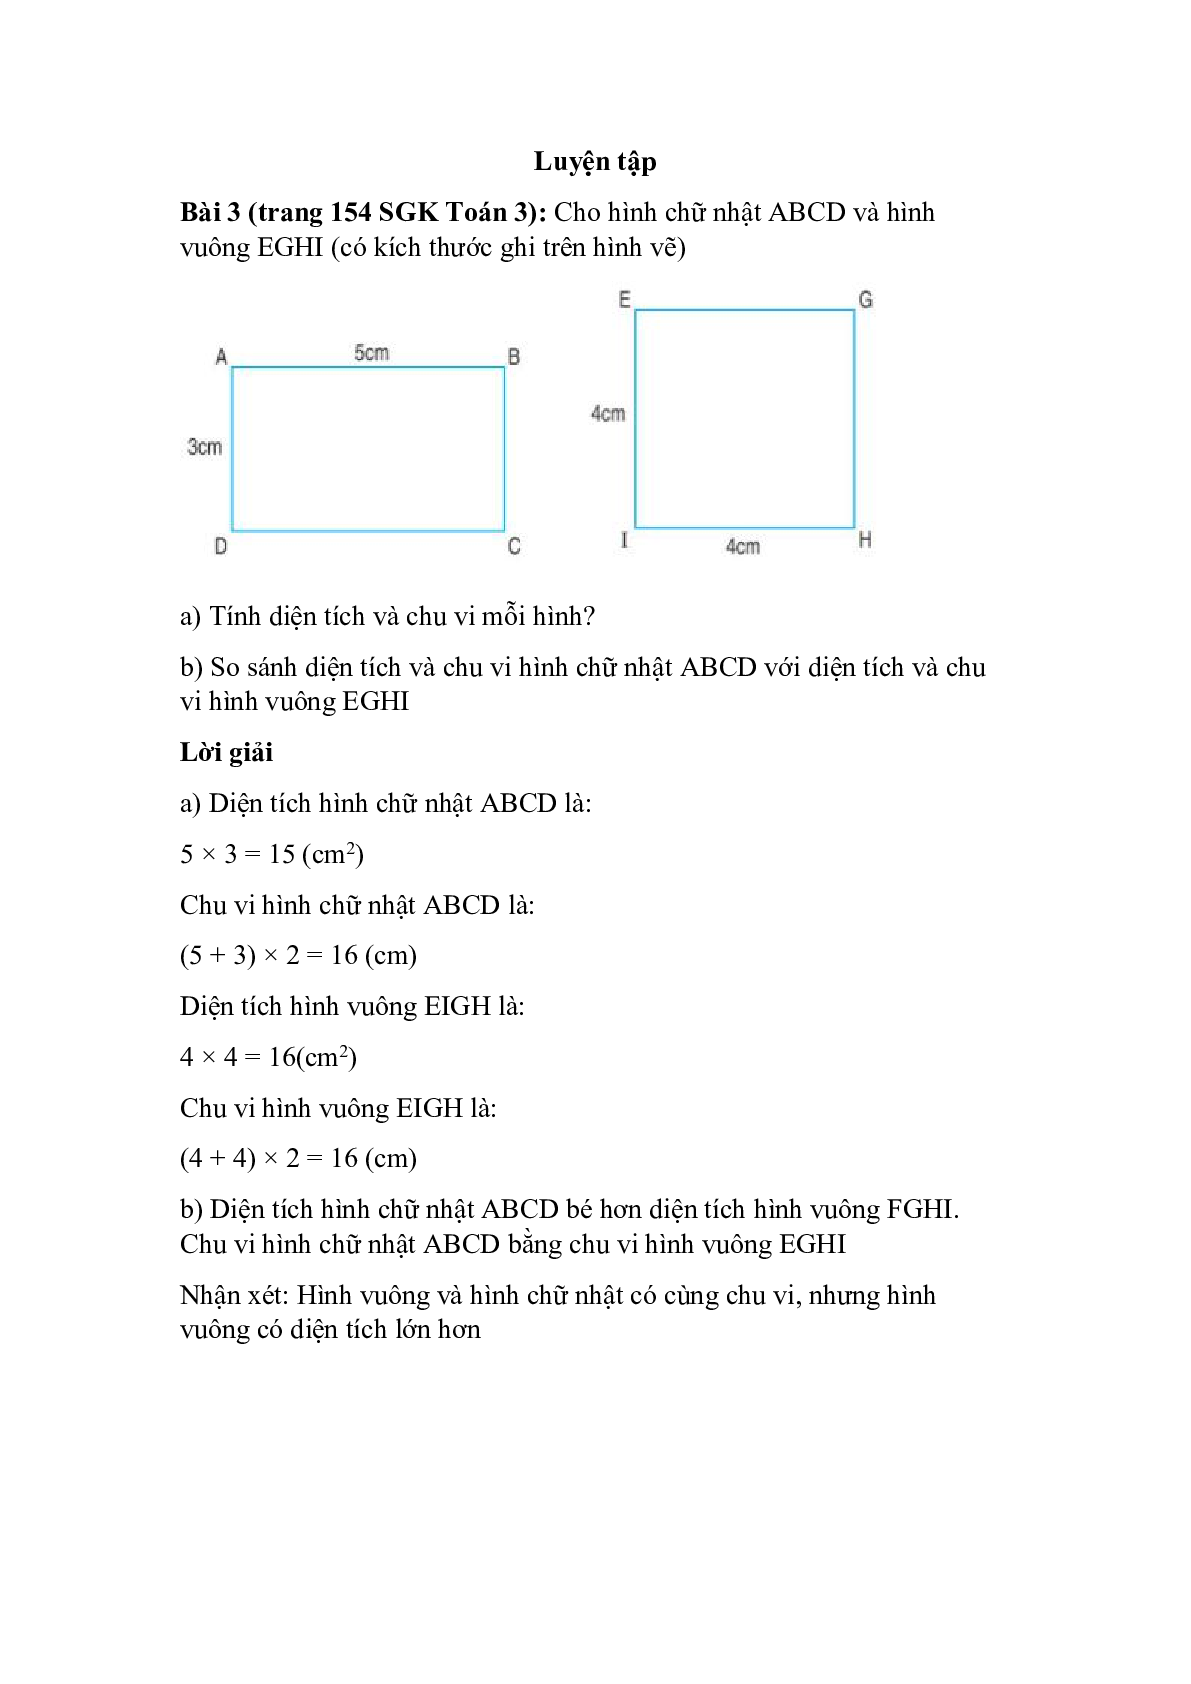 Cho hình chữ nhật ABCD và hình vuông EGHI (có kích thước ghi trên hình vẽ) (trang 1)